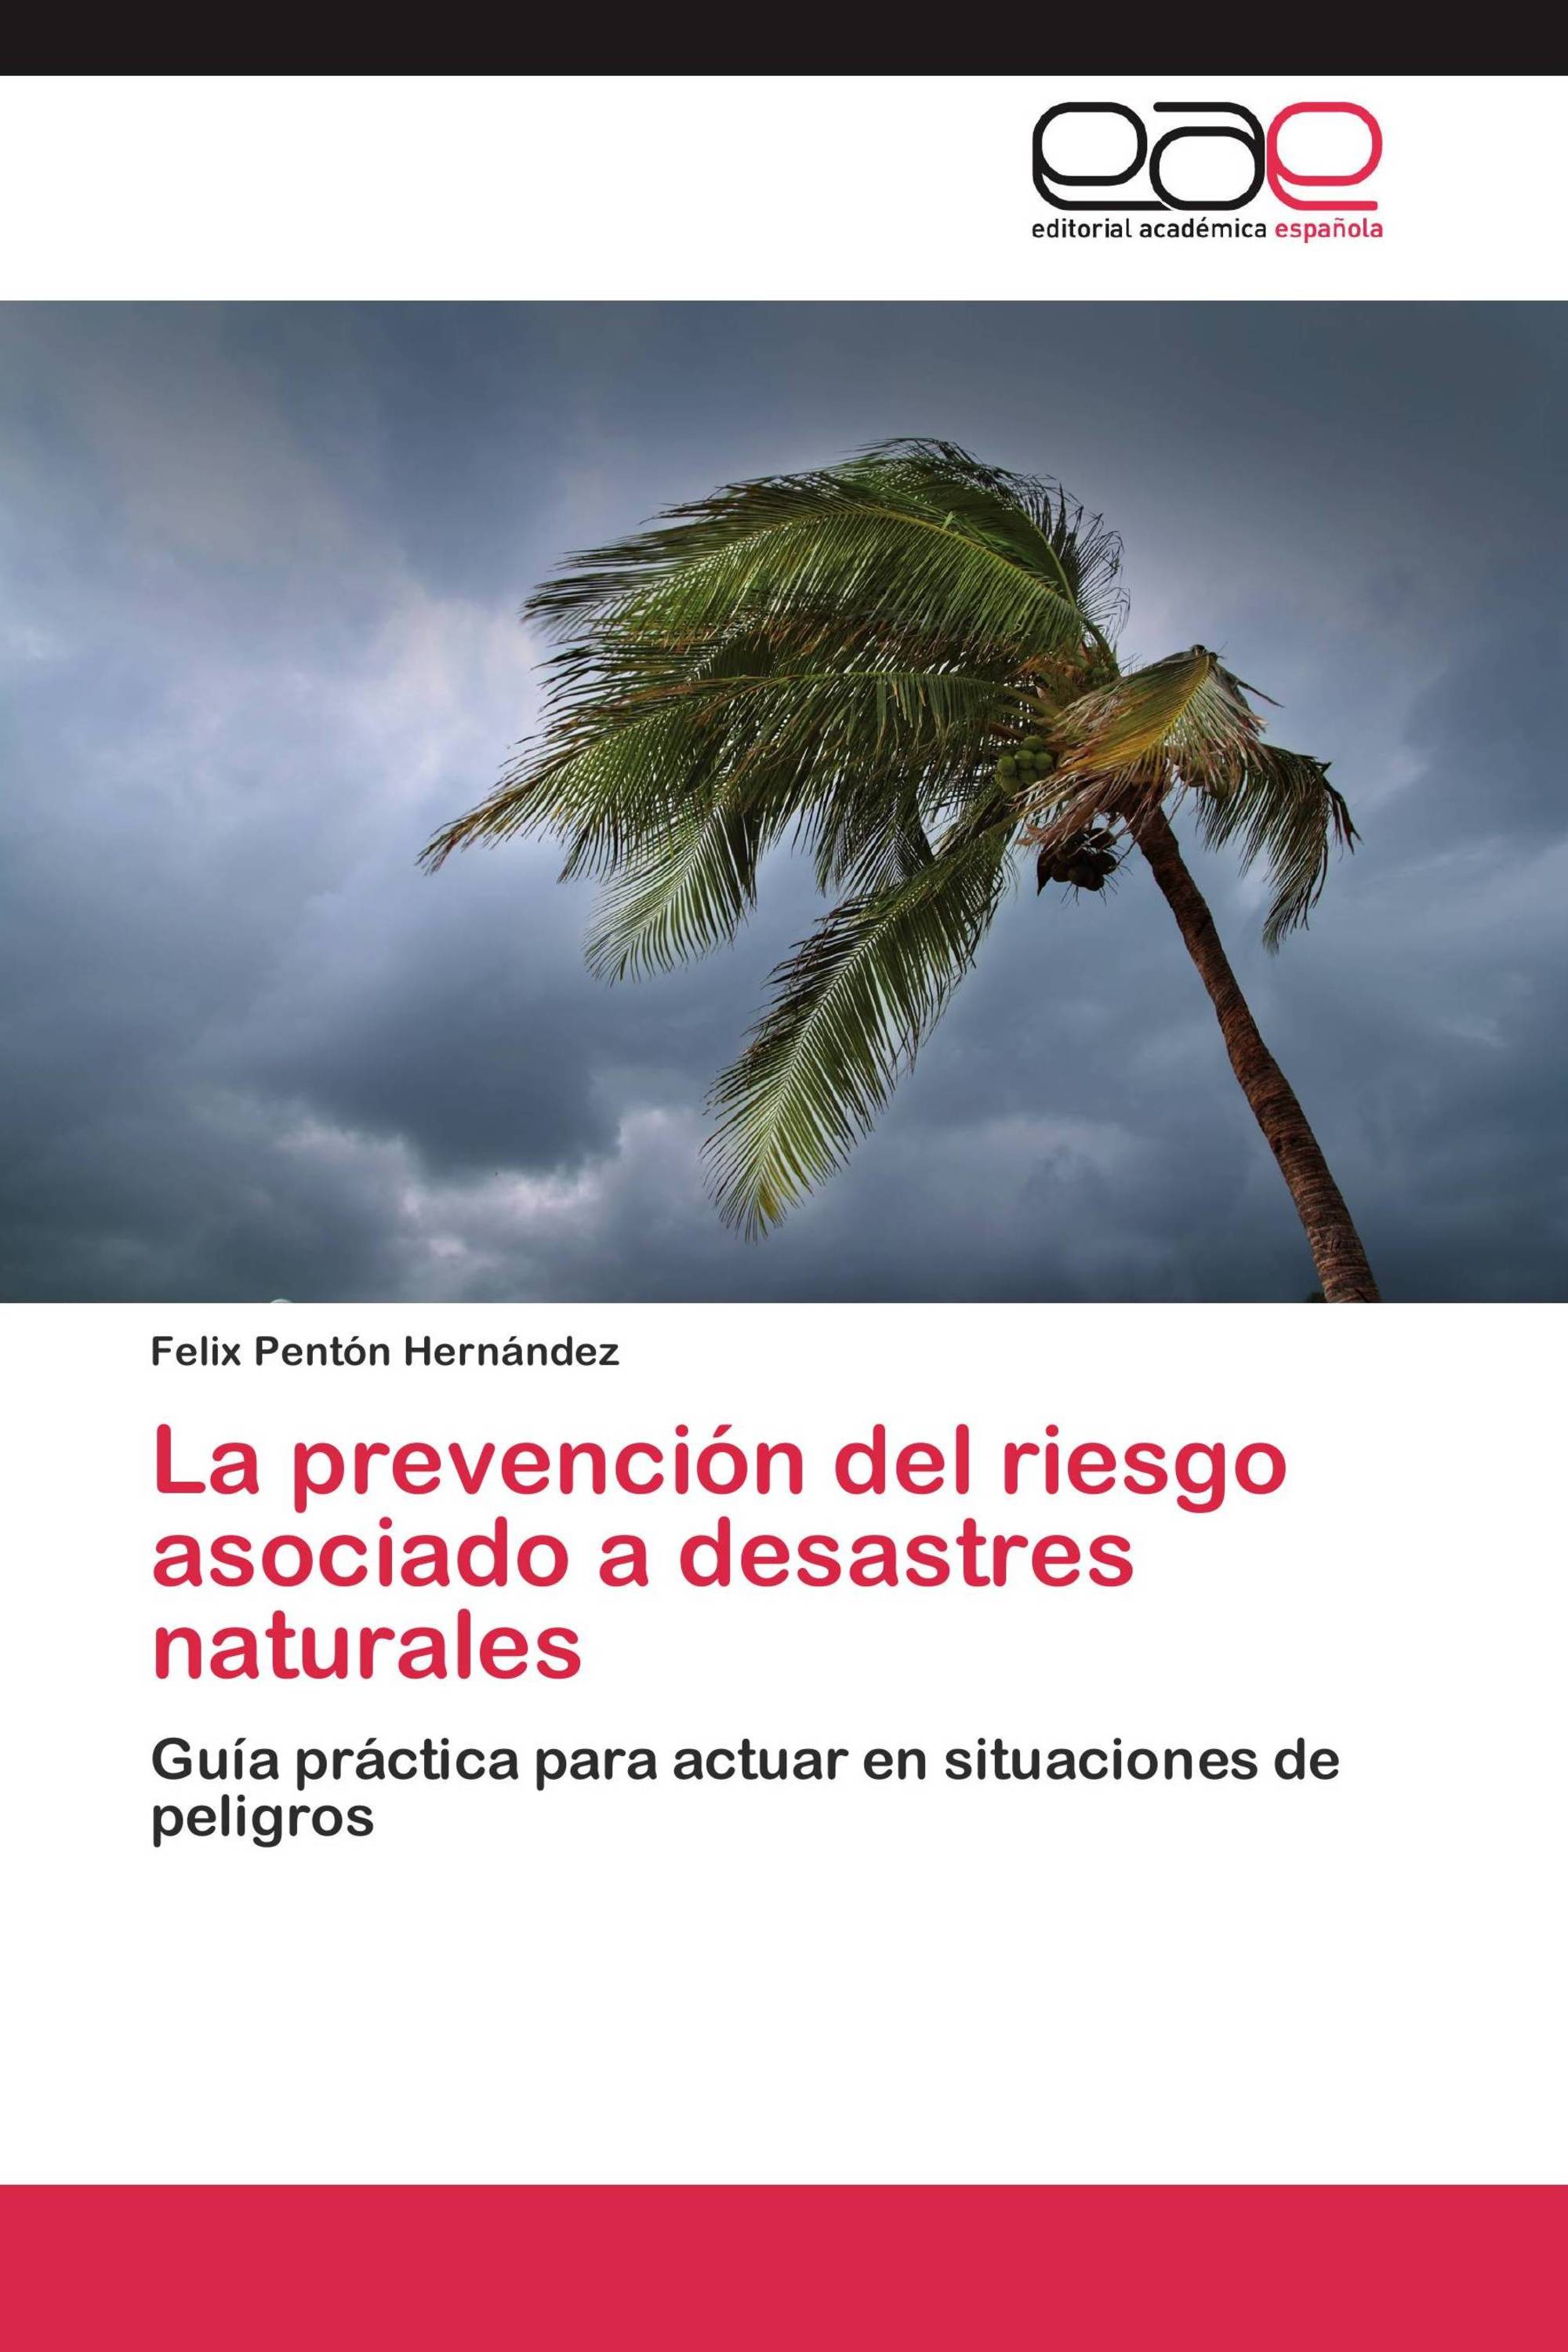 La prevención del riesgo asociado a desastres naturales